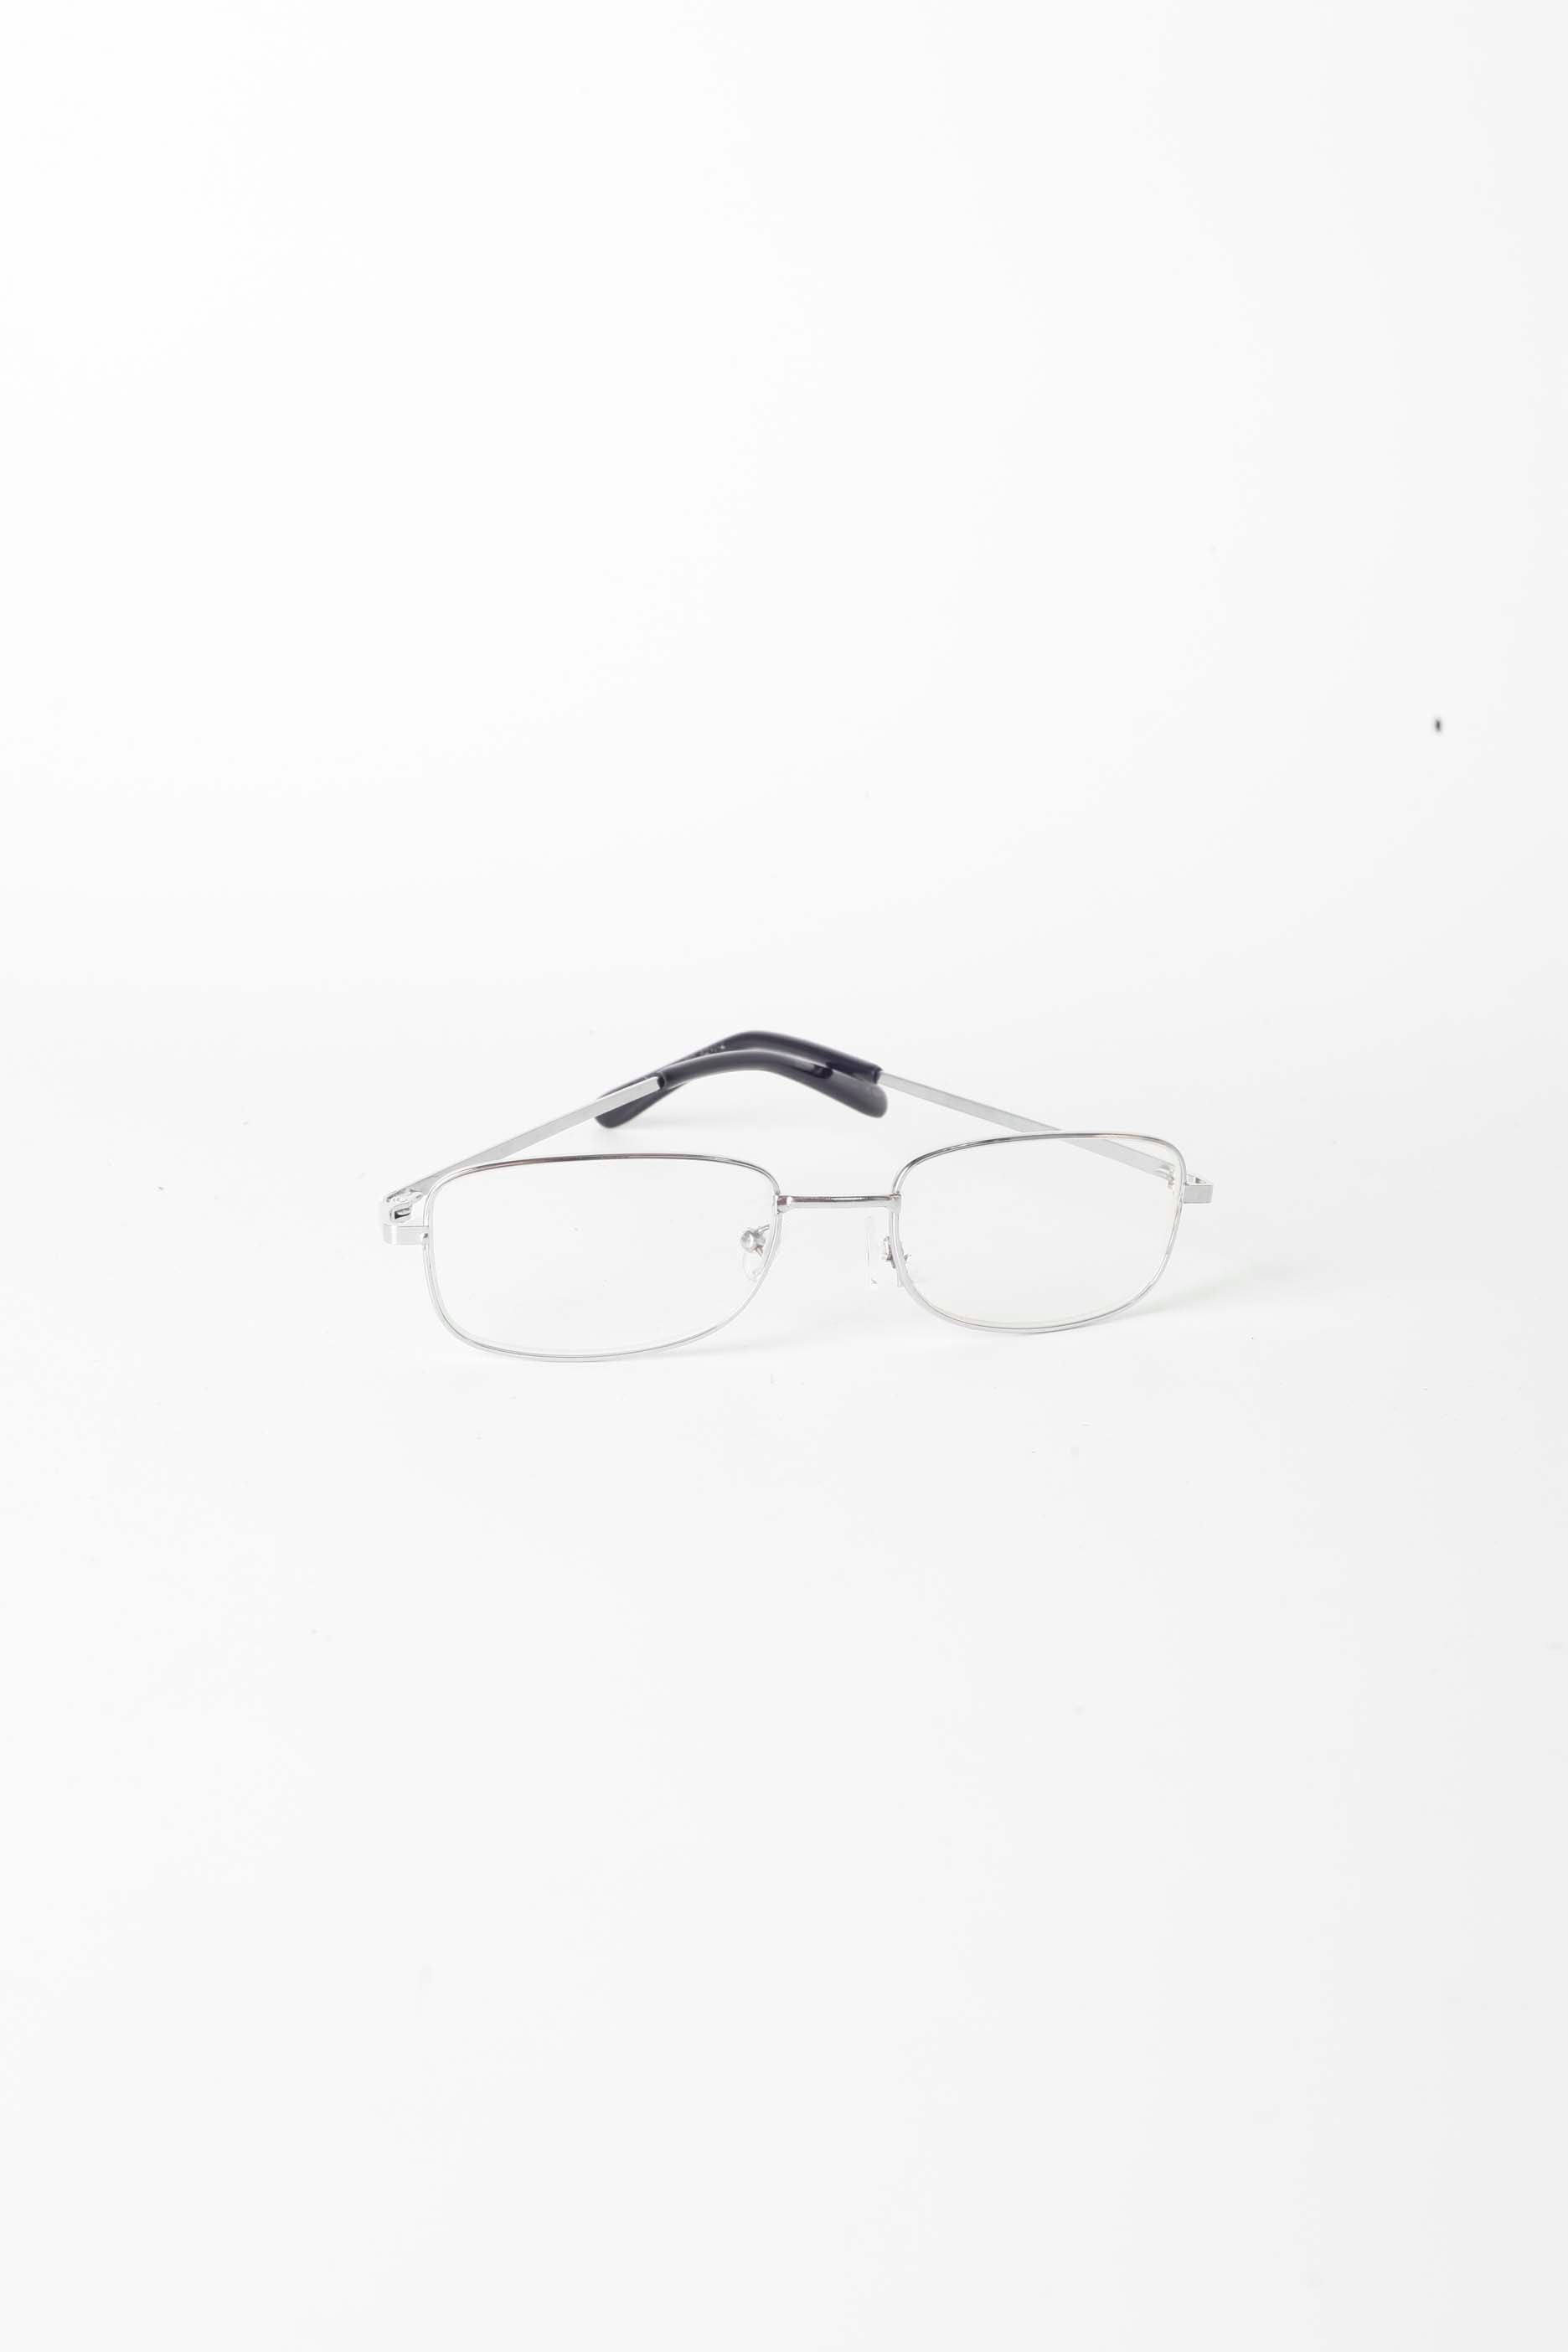 Silver Framed Reading Glasses